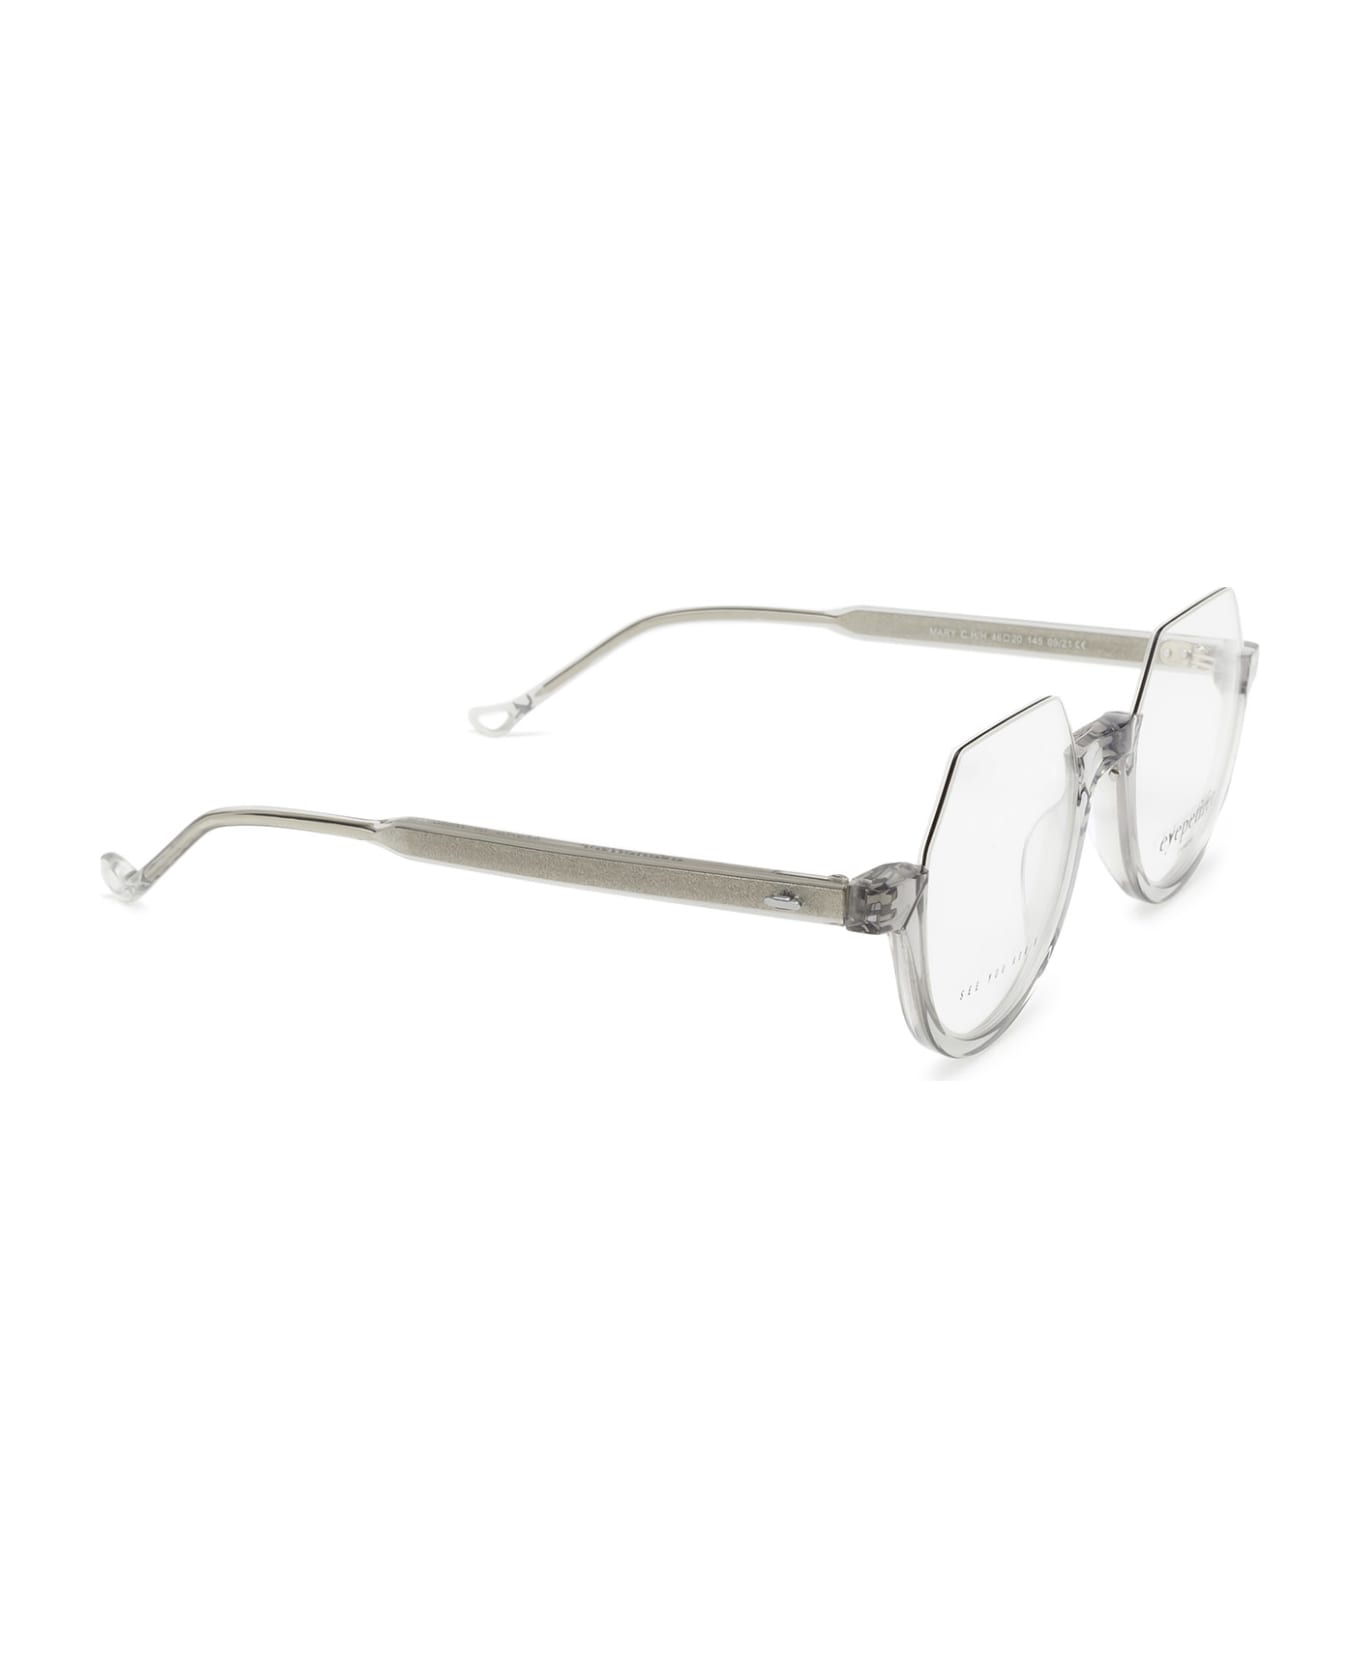 Eyepetizer Mary Grey Glasses - Grey